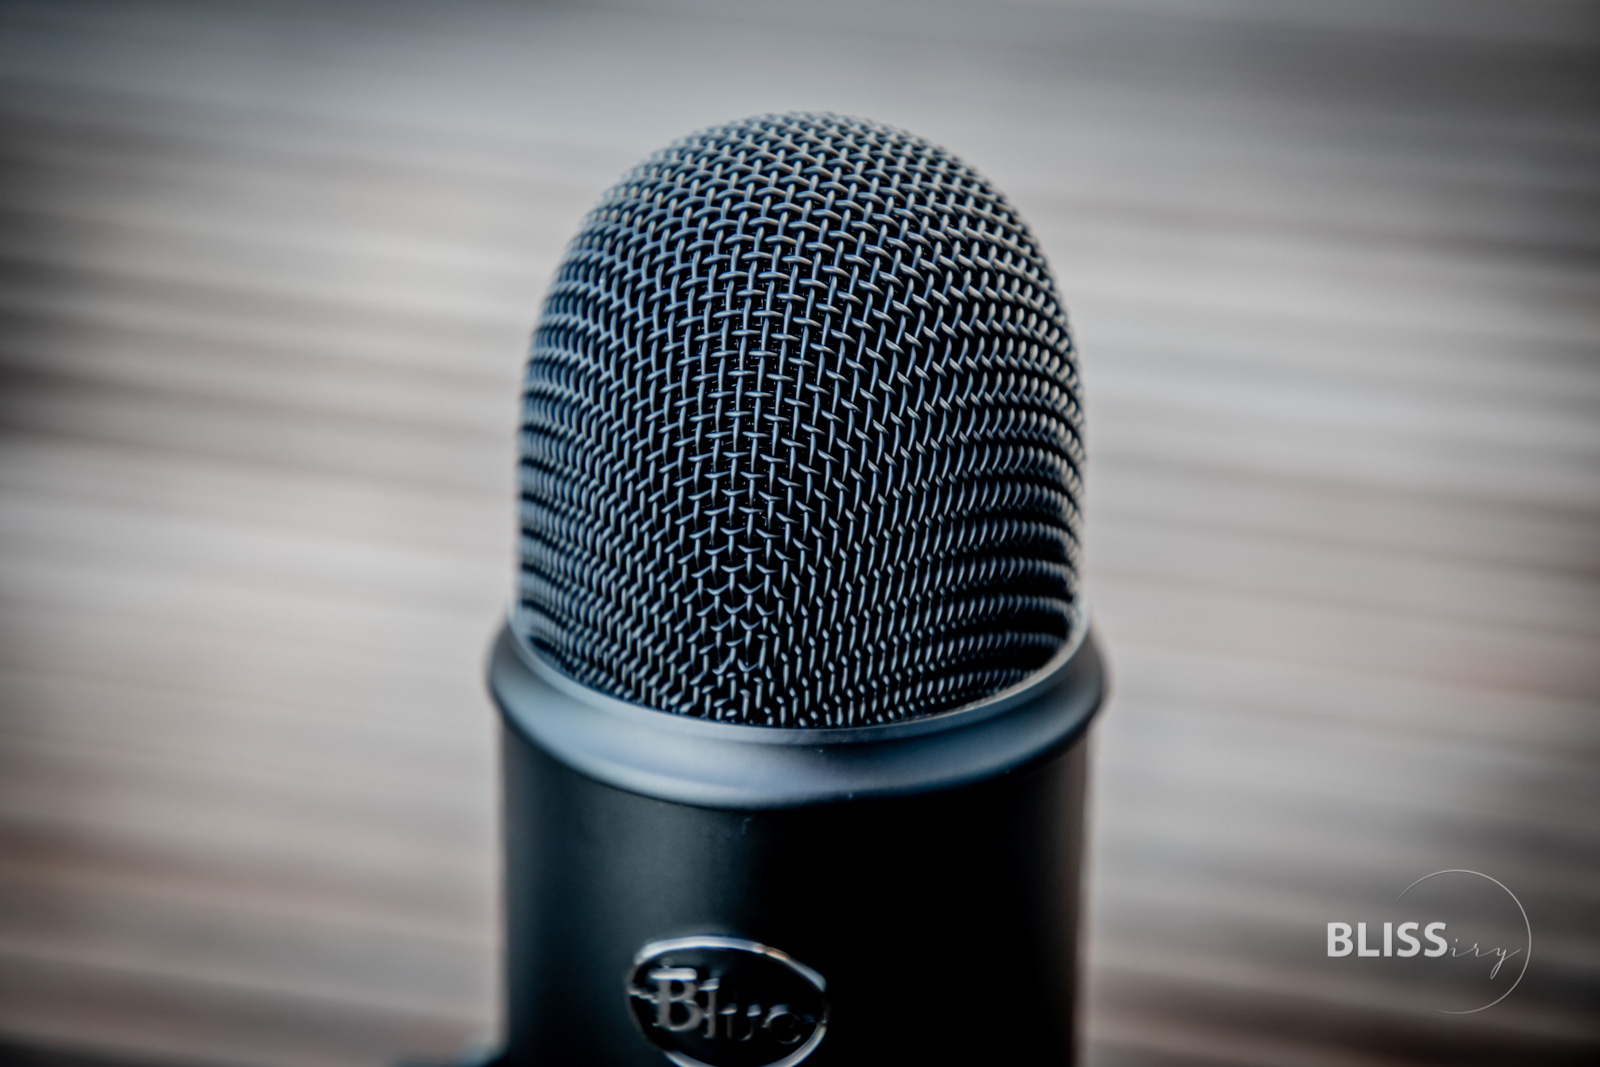 Blue Microphone Yeti USB Mikrofon für Podcasts und YouTube Videos - Podcast-Mikrofon mit USB Anschluss - Bewertung und Produkttest